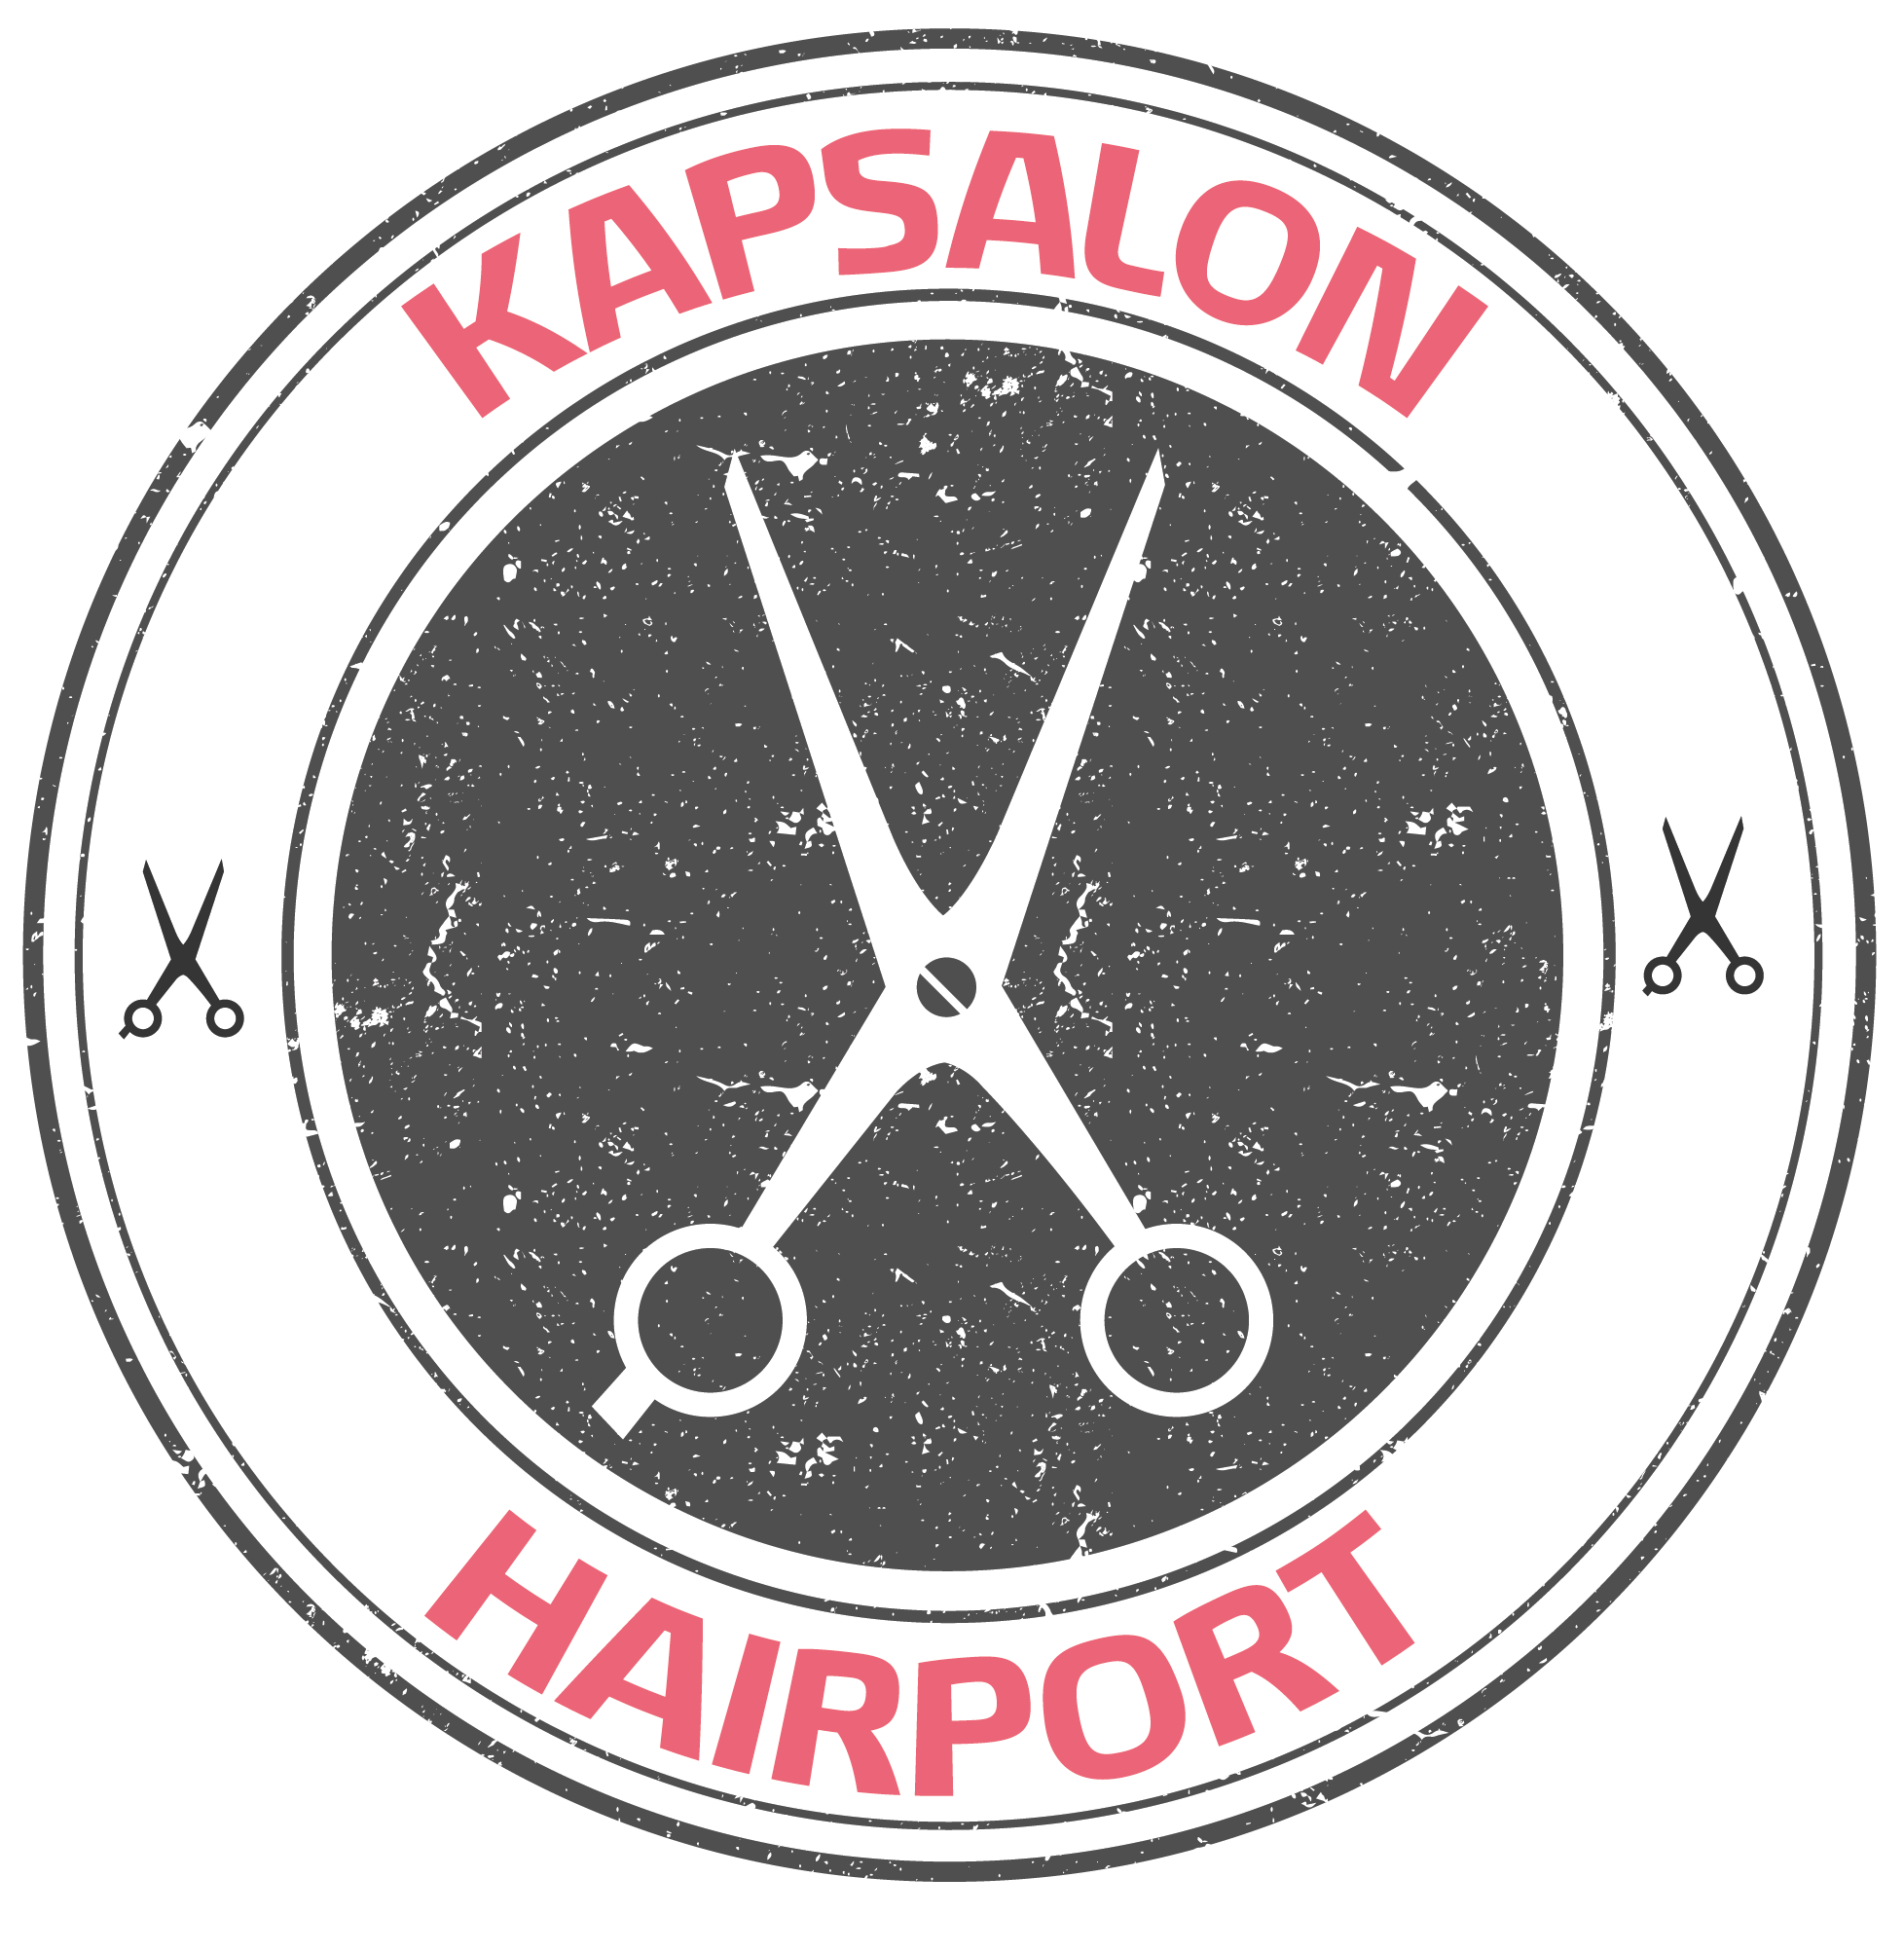 2e jaars NIV 2 - Kapper bij Kapsalon Hairport Goes